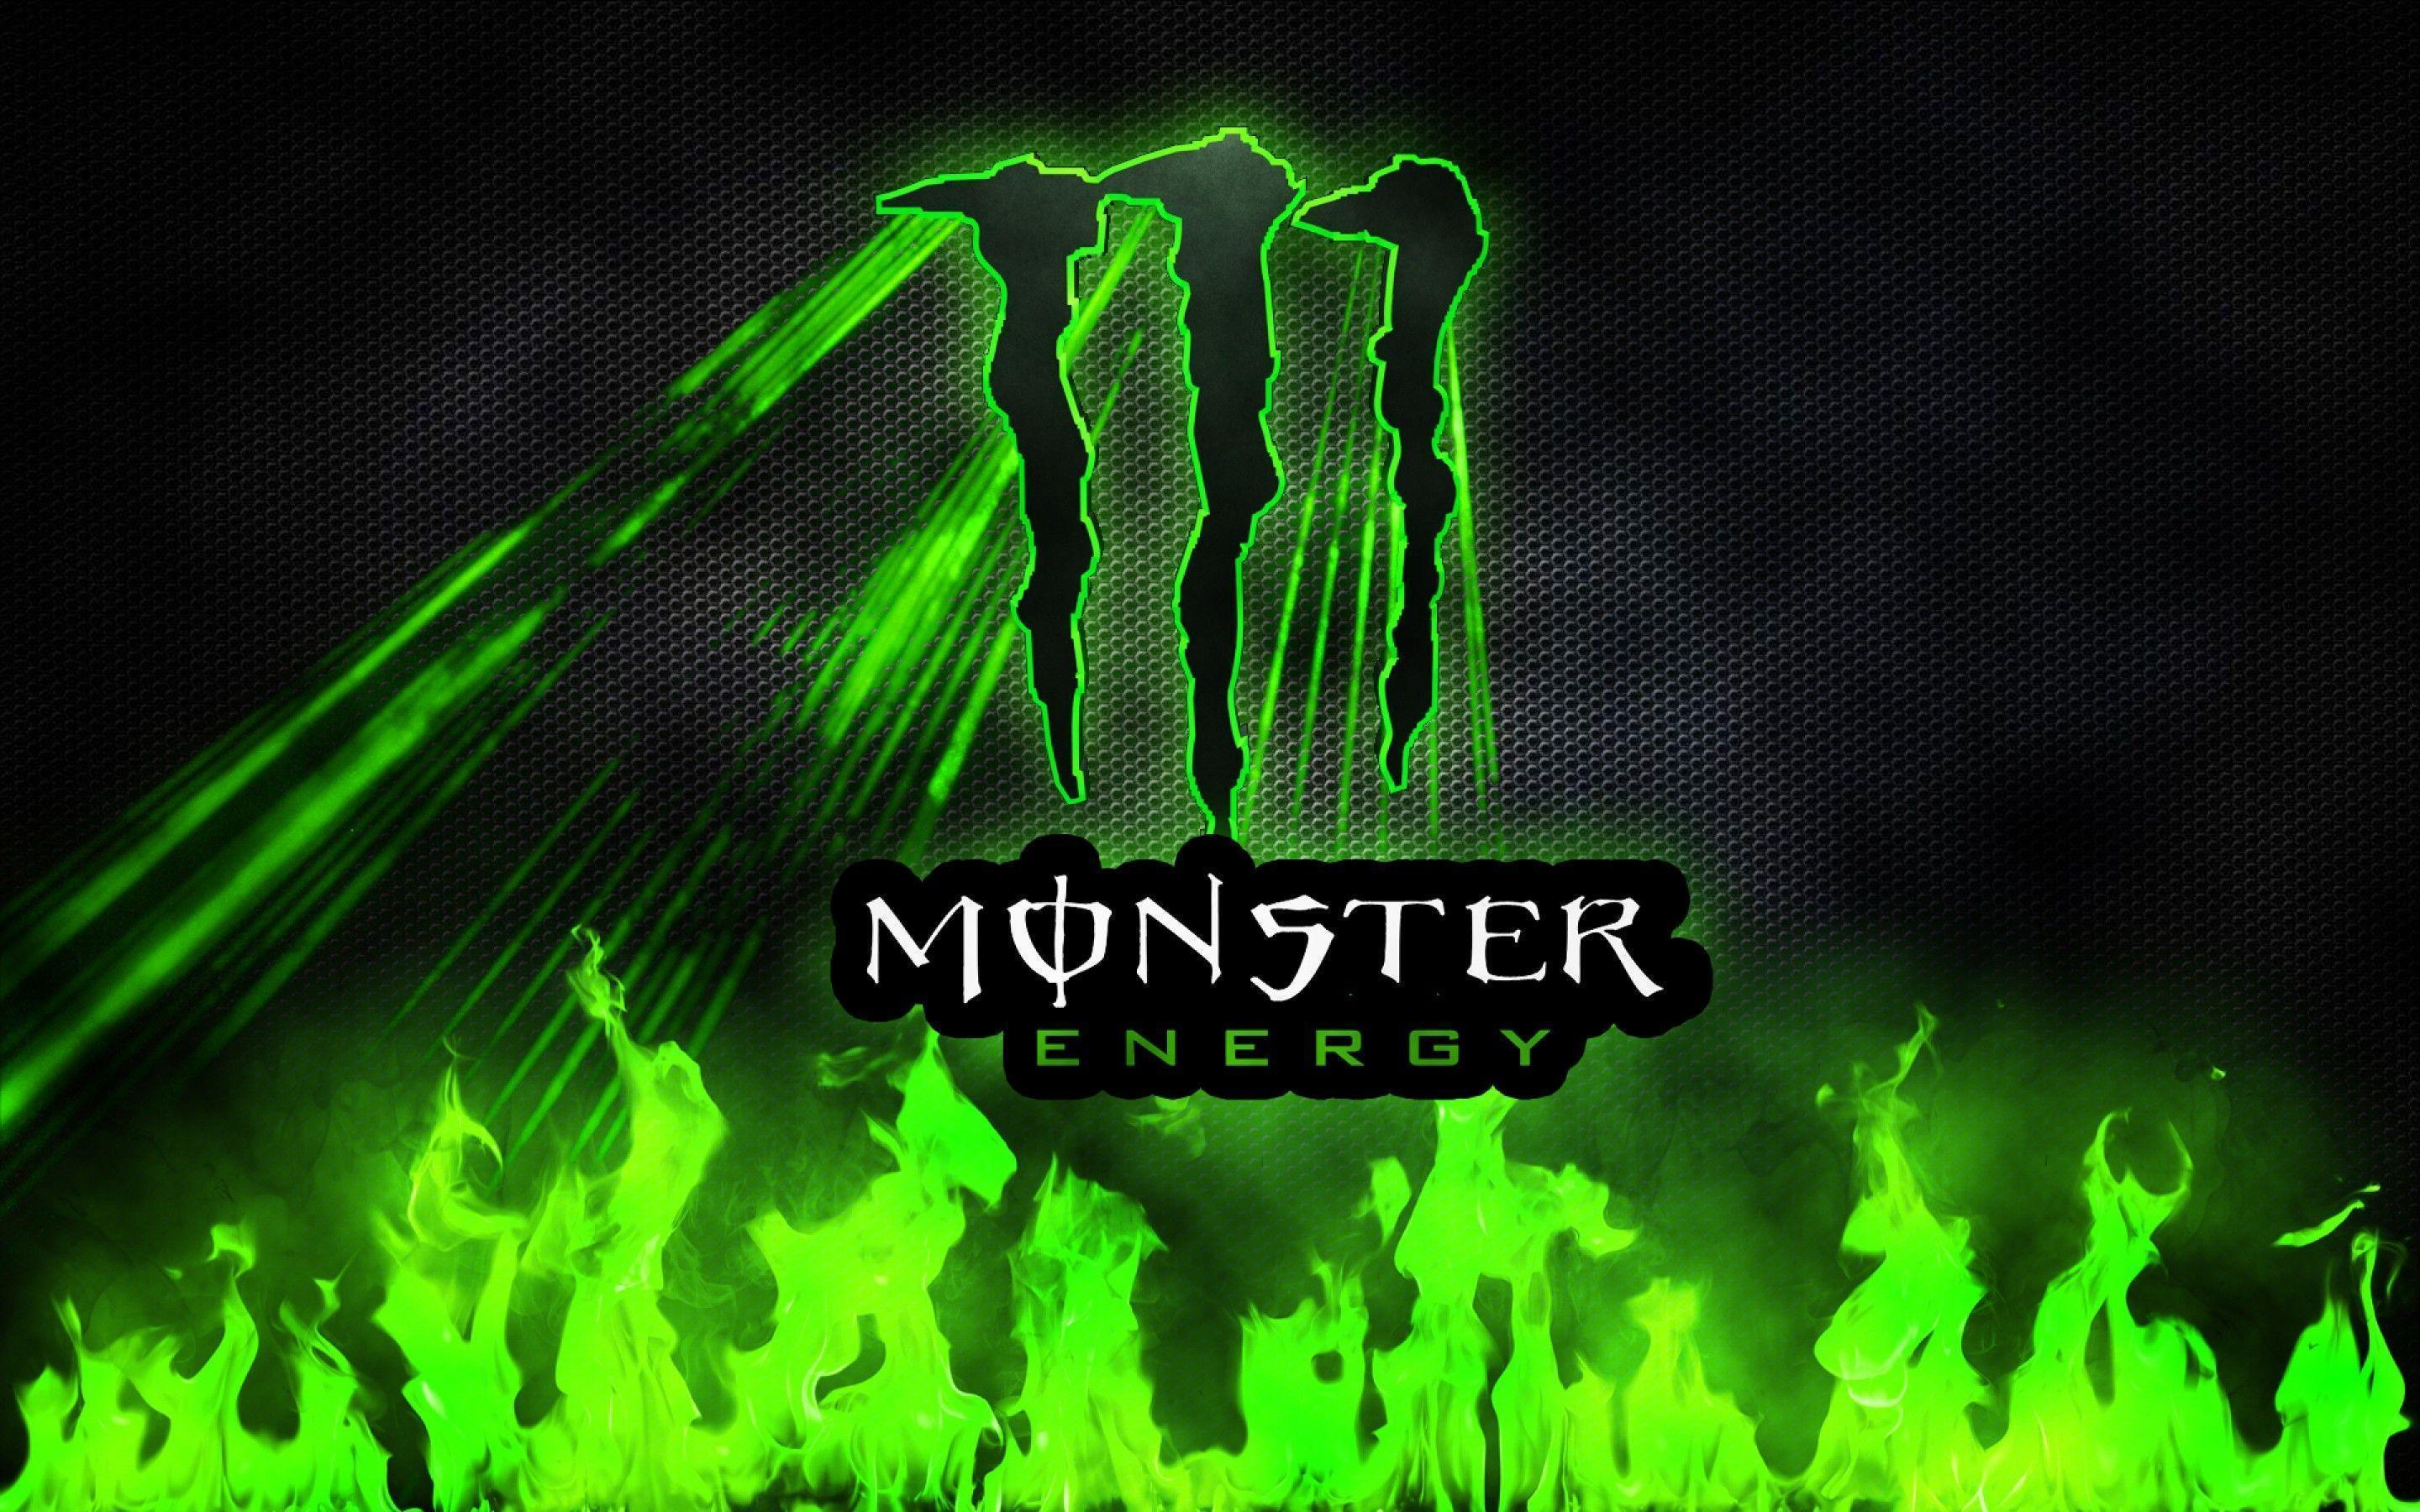 Gambar Monster Energy - KibrisPDR